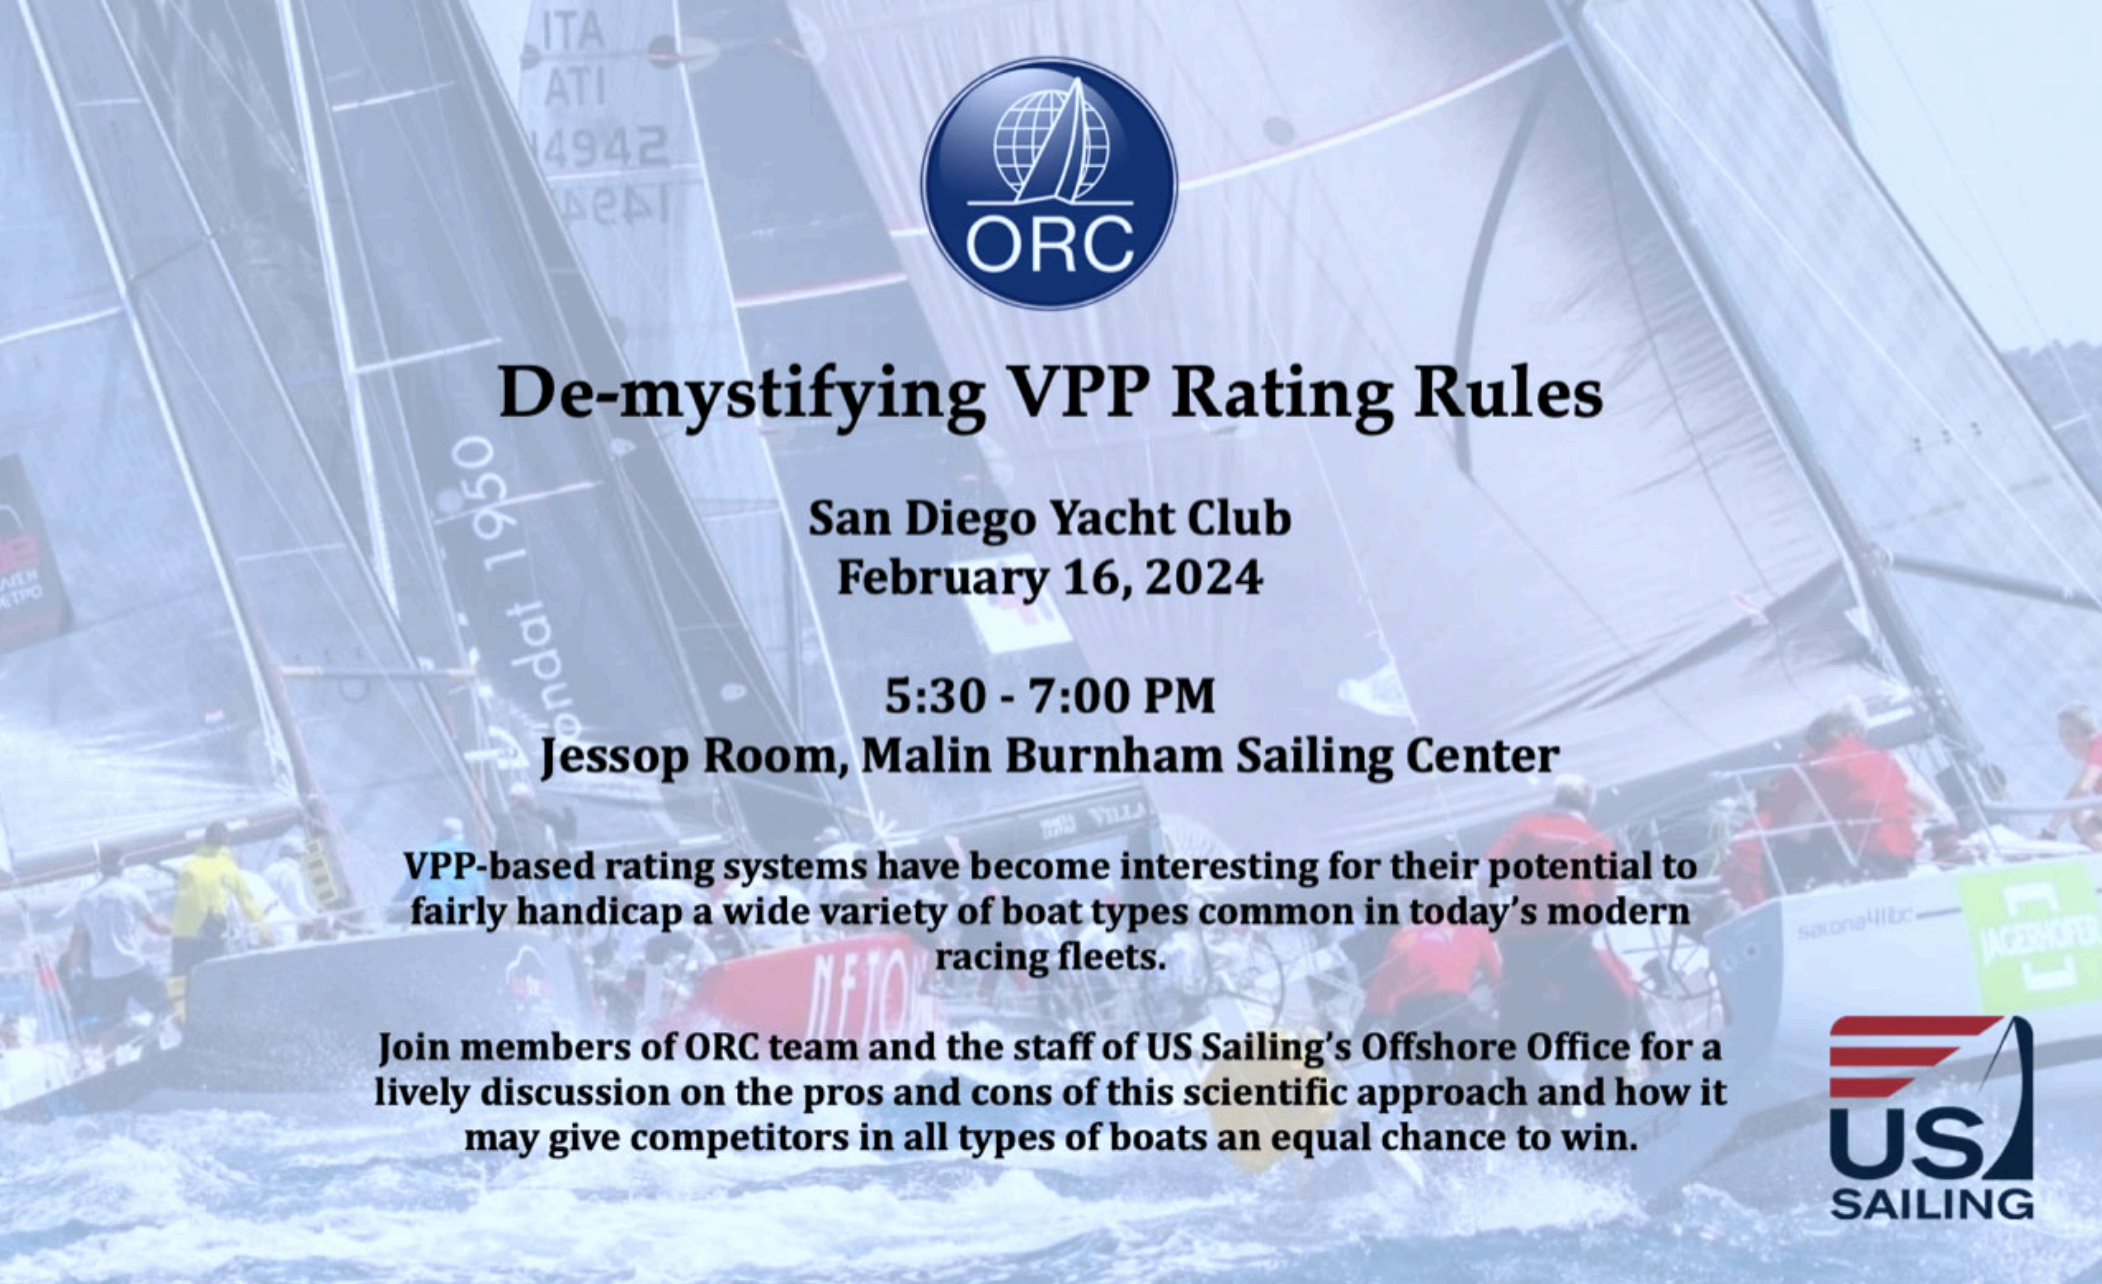 ORC presentation at Sand Diego Yacht Club - February 16, 2024